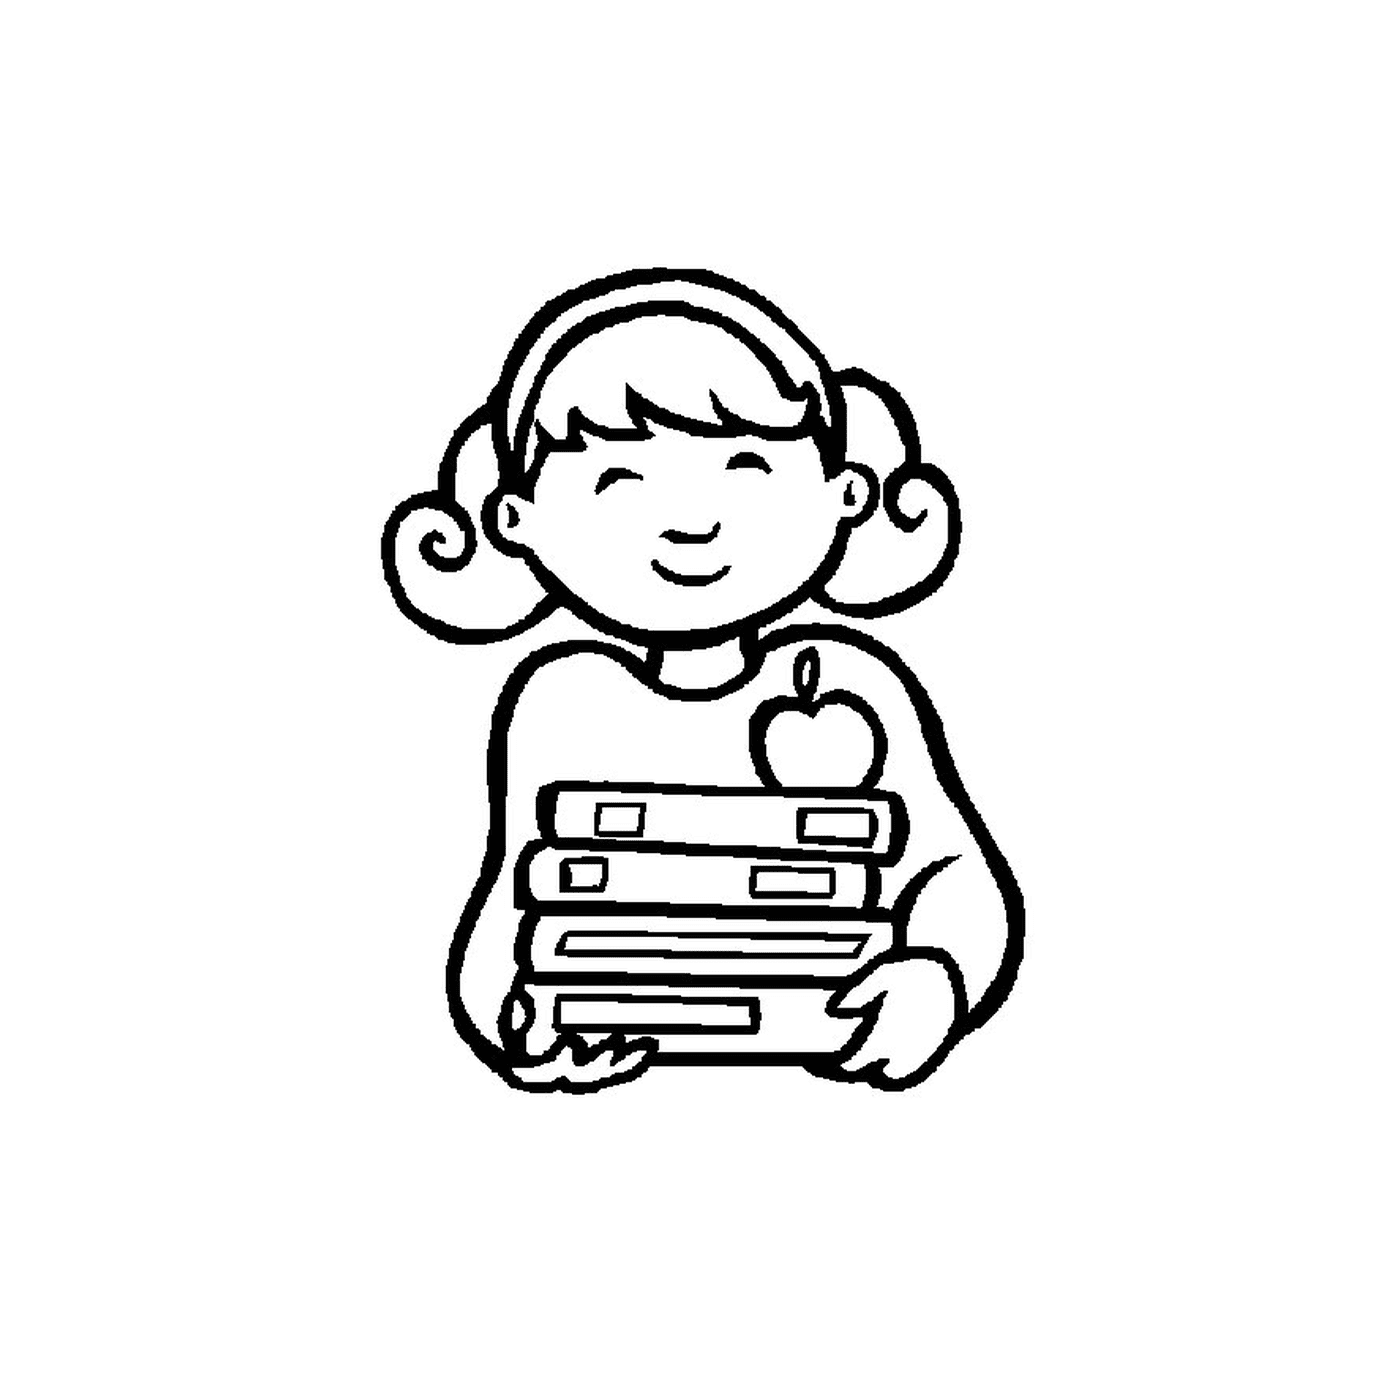   Petite fille tenant une pile de livres 